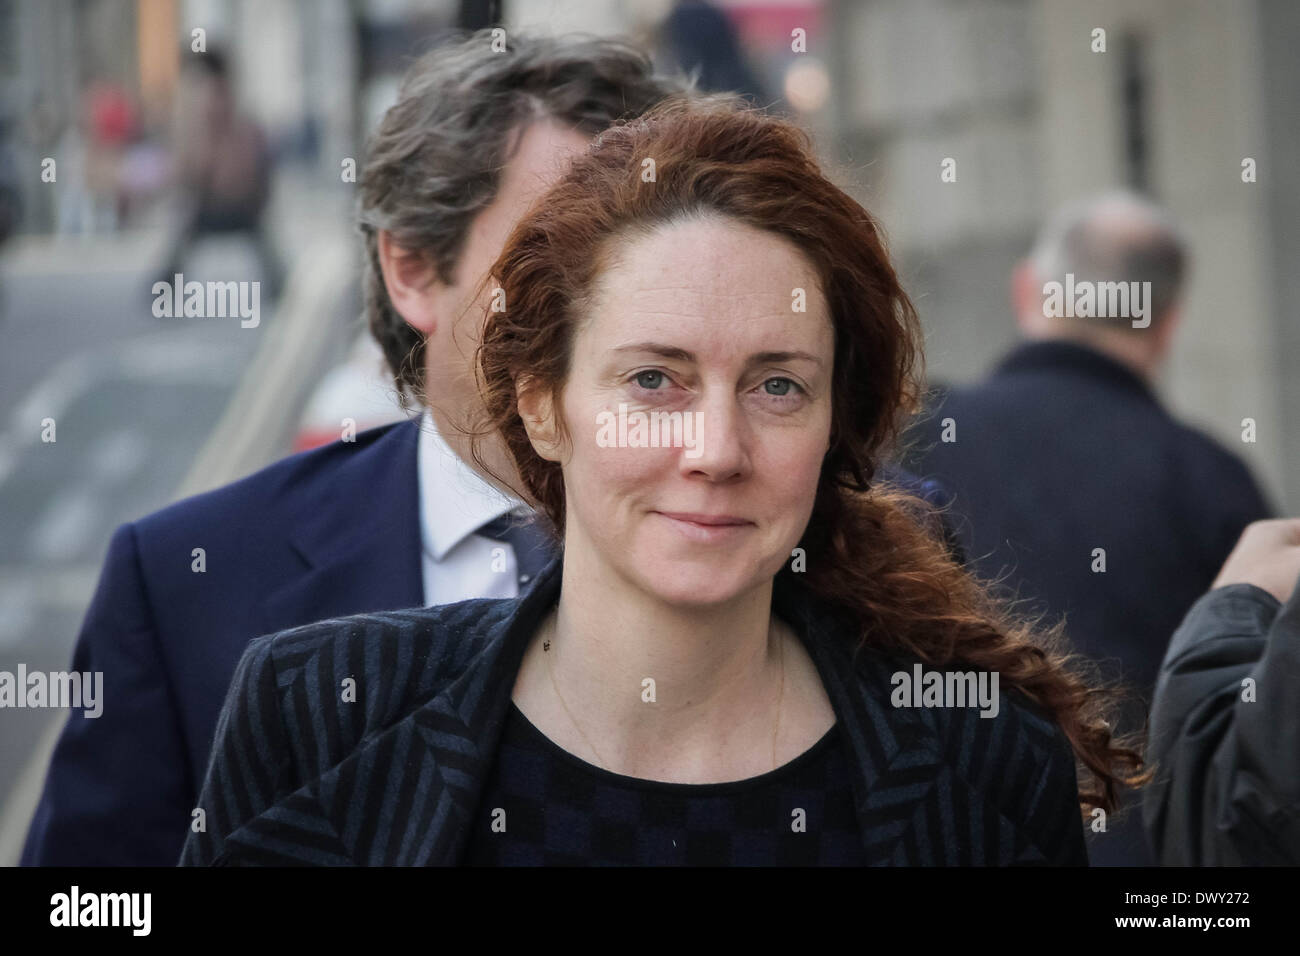 Rebekah Brooks arrive à Old Bailey court de Londres pour continuer son procès découlant de l'News International phone hacking. Banque D'Images